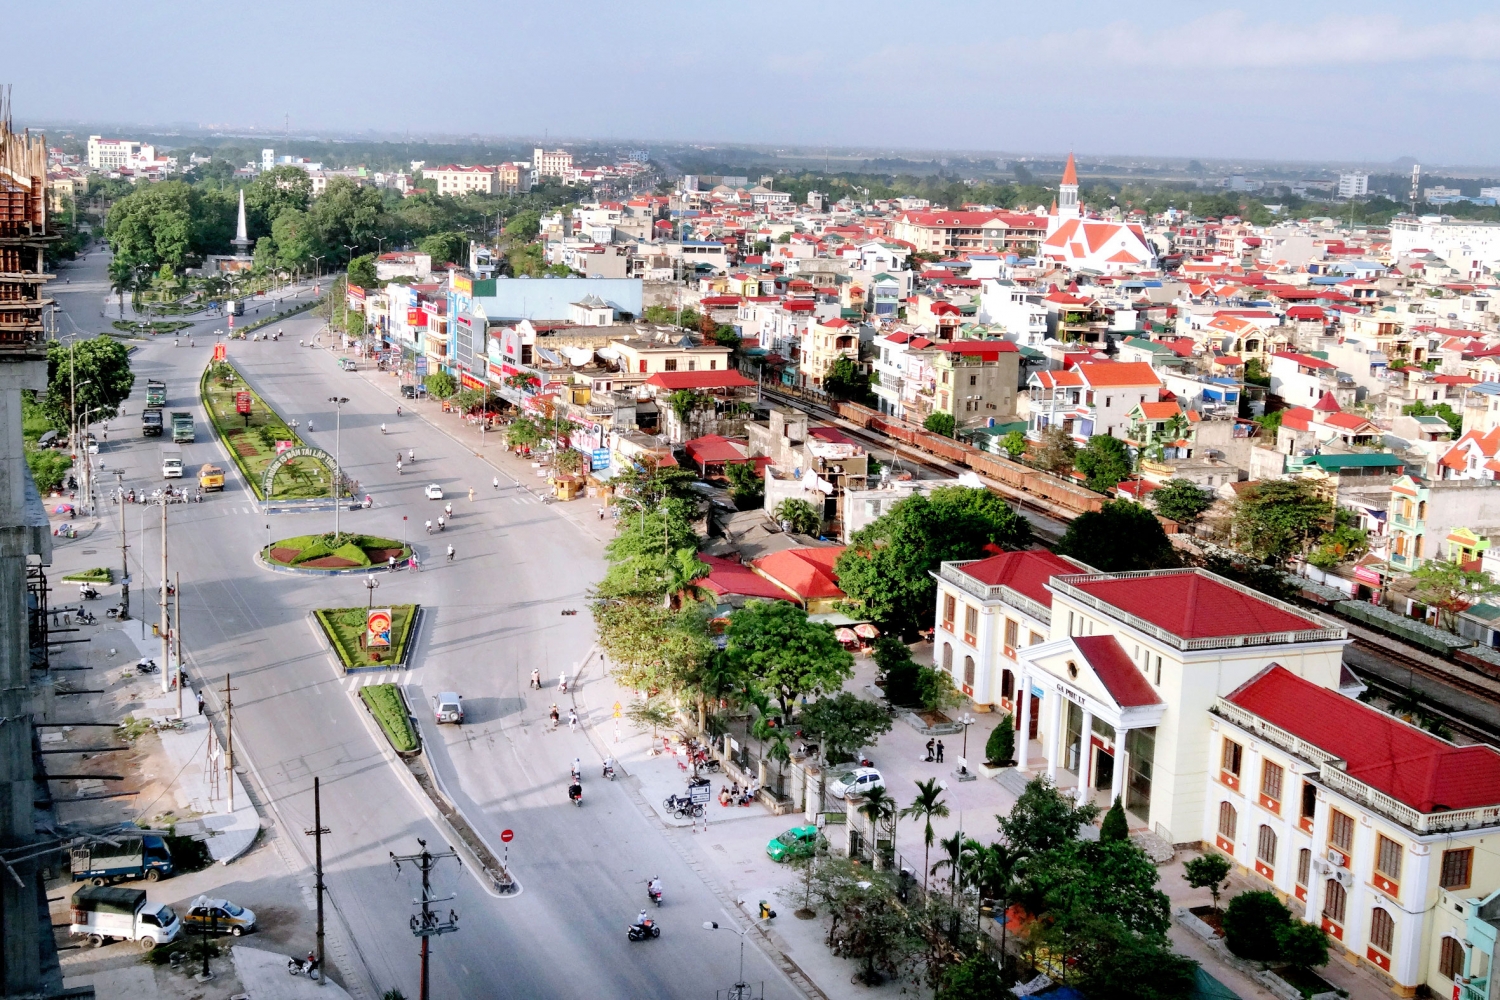 Tin nhanh bất động sản ngày 7/5: Hà Nam tìm nhà đầu tư cho khu dân cư hơn 8,6 ha